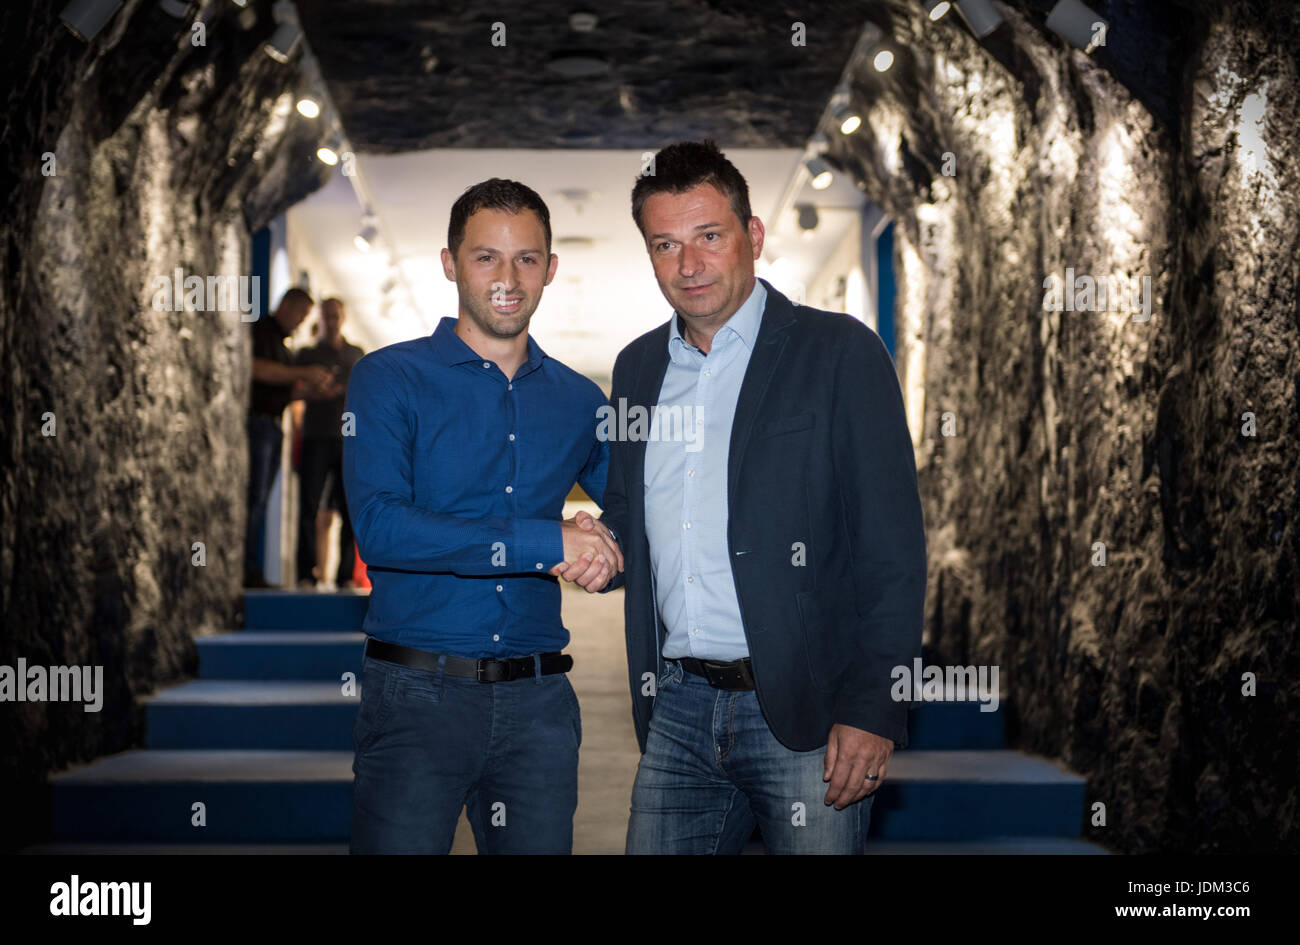 El nuevo entrenador del club de la Bundesliga FC Schalke 04 Domenico Tedesco (L) y sport manager Christian Heidel agitar las manos en el reproductor de "túnel", que se basa en el túnel de una mina, en la Veltins-Arena tras una conferencia de prensa en Gelsenkirchen, Alemania, el 21 de junio de 2017. Los 31 años de edad, firmó un contrato de dos años. Tedesco asumió el segundo club de la liga en el último lugar de aue el año pasado y preservado de la ascendencia. Foto: Bernd Thyssen/dpa Foto de stock